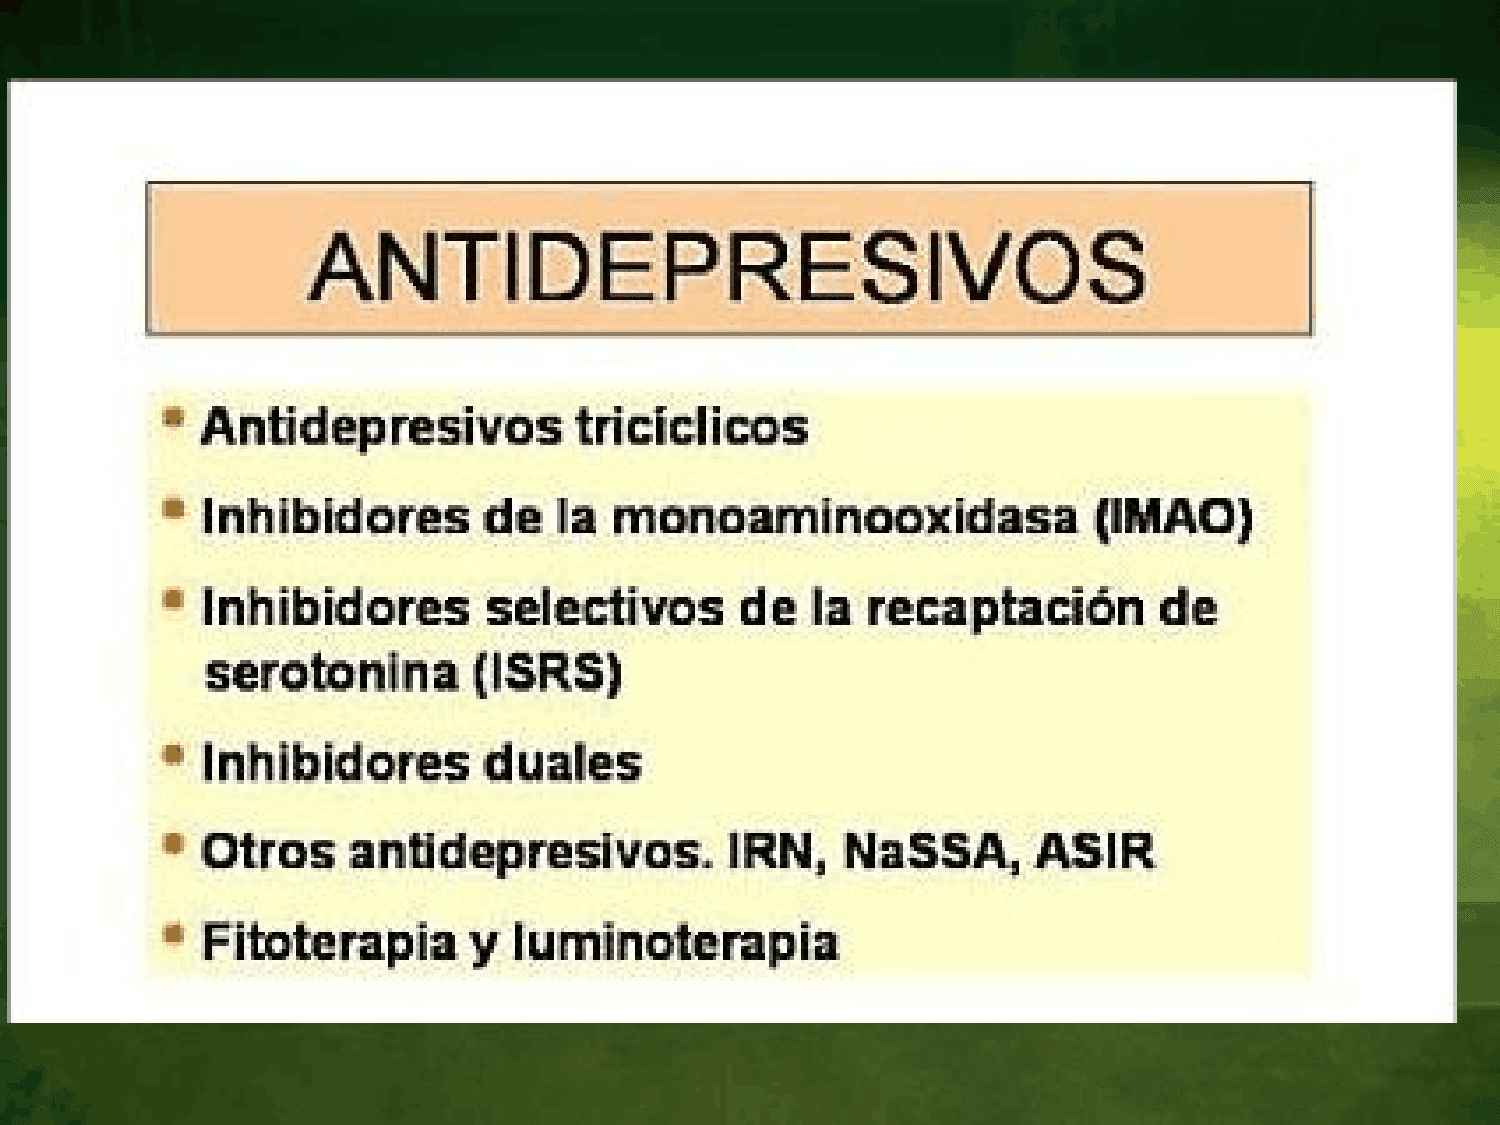 Antidepresivos TricÍclicos E Inhibidores De La Monoaminooxidasa